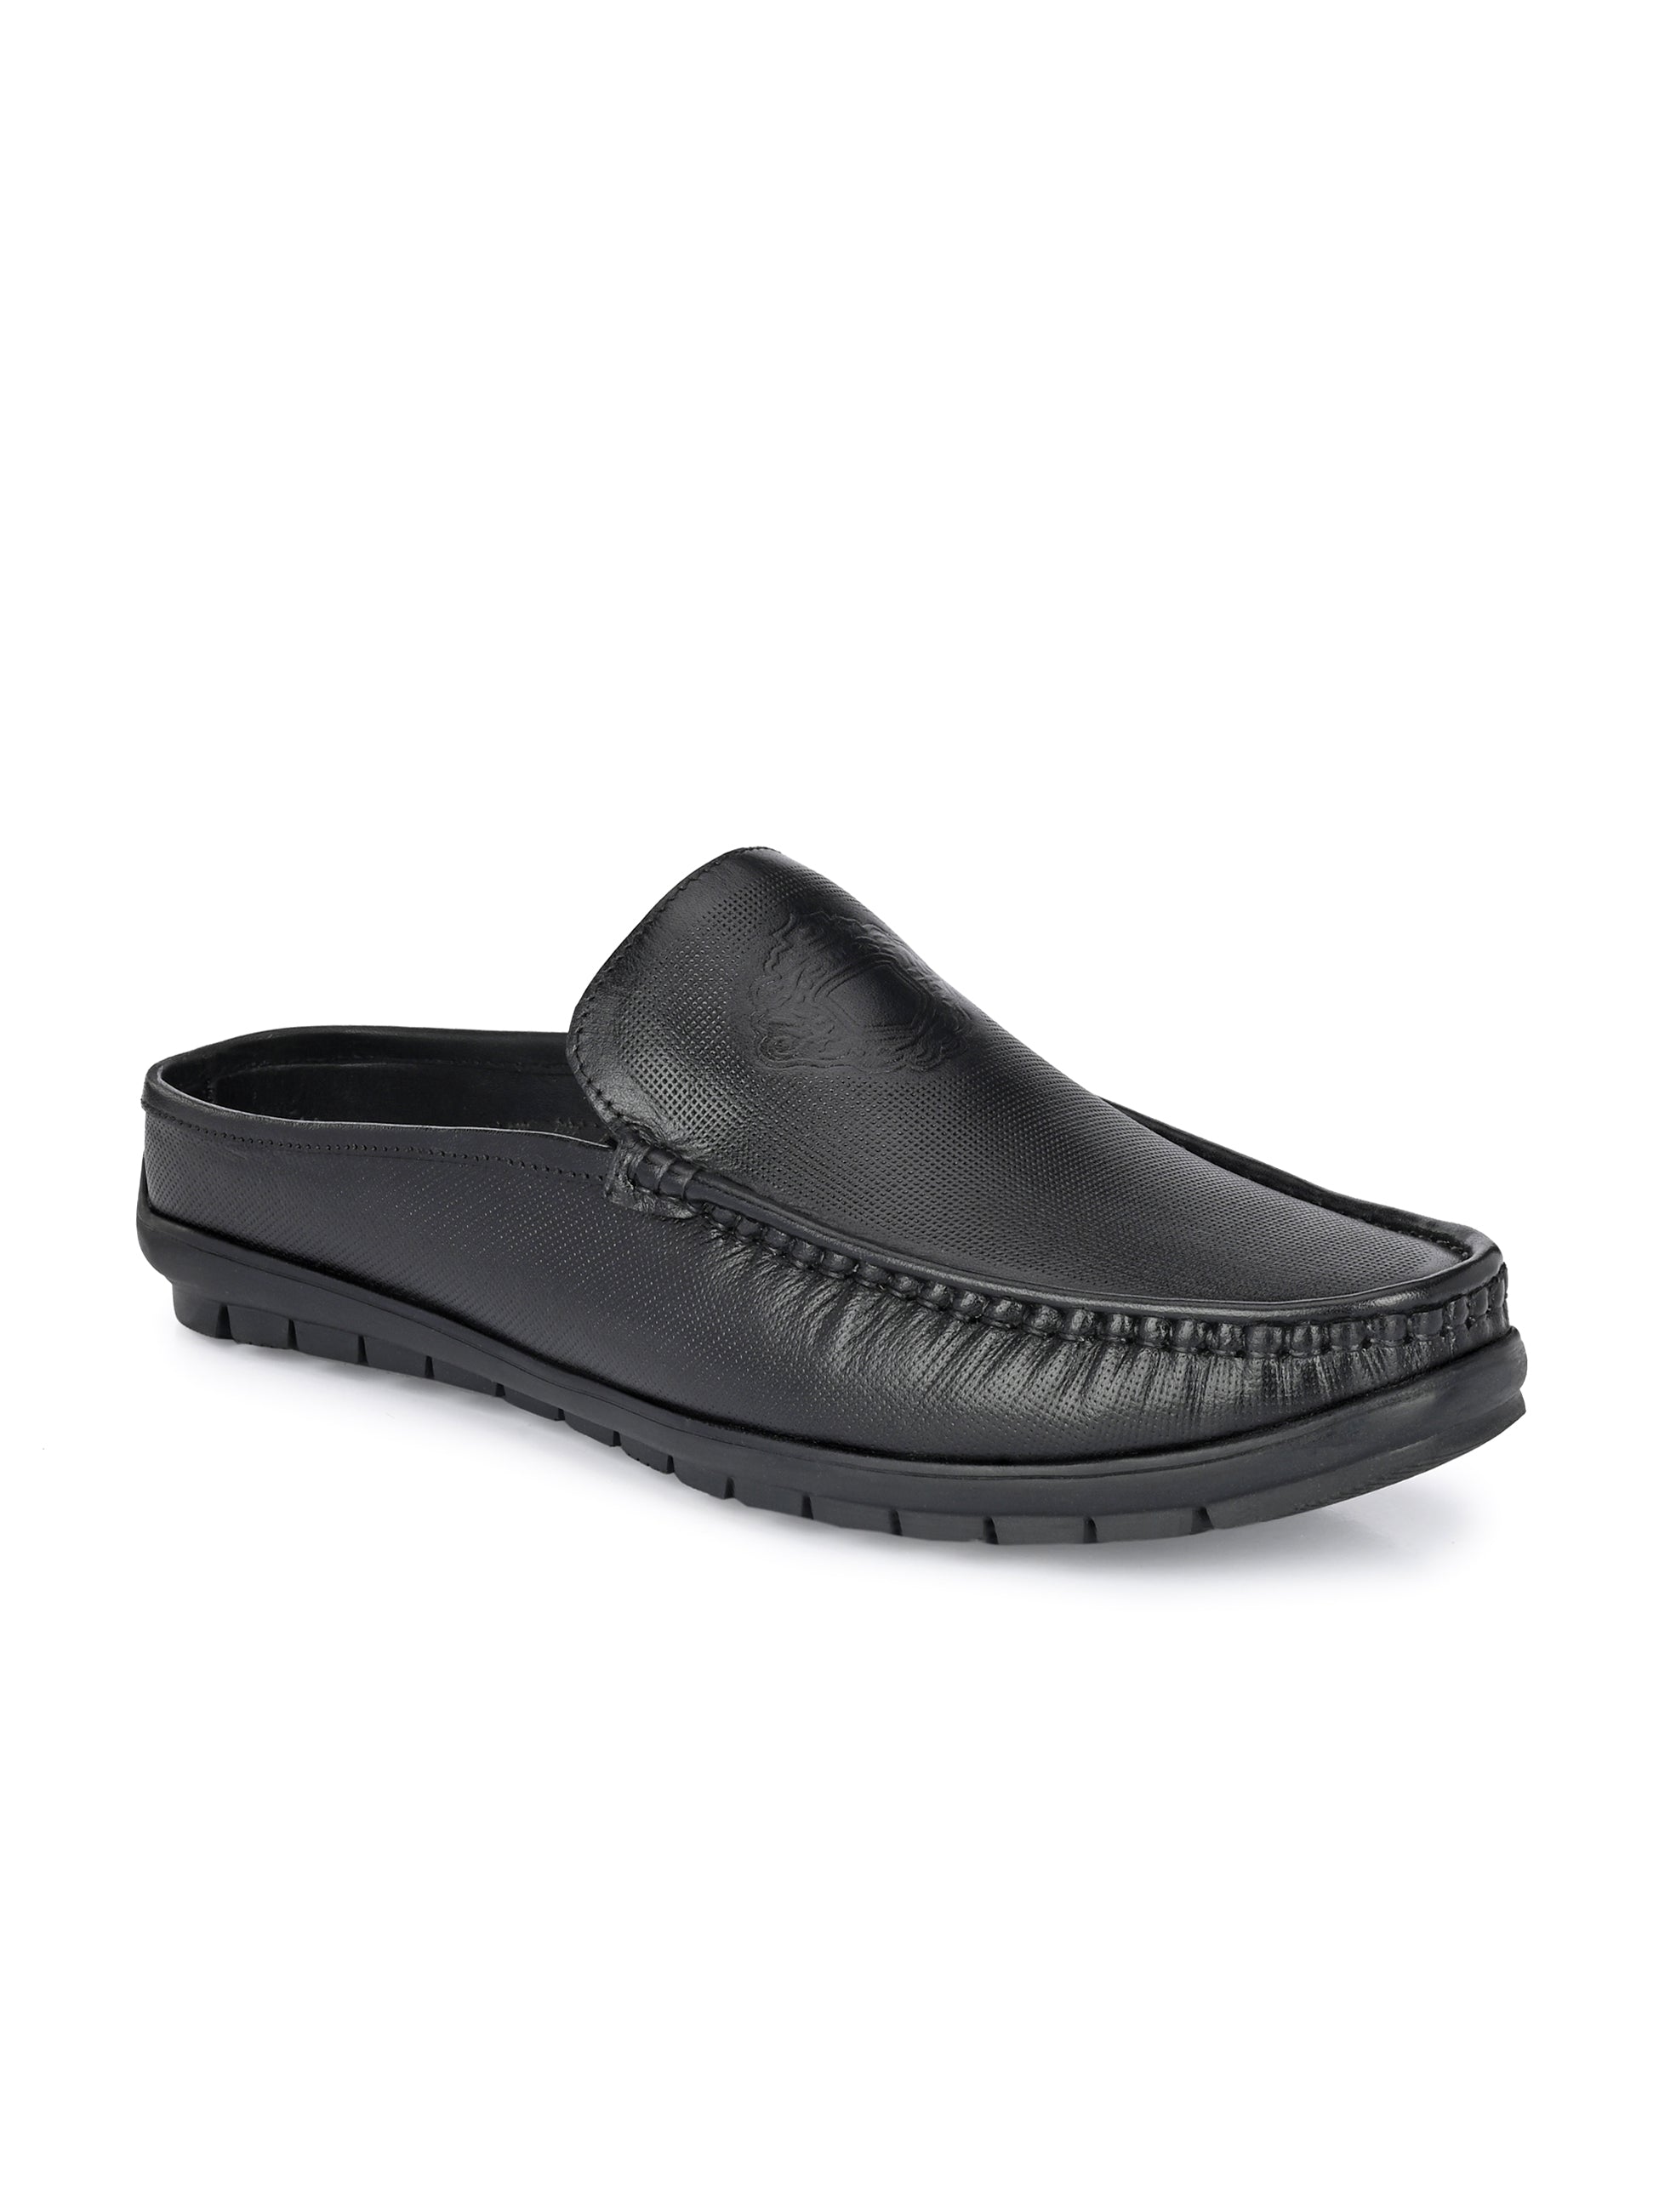 Hitz Men's Black Leather Half Shoes Flat Mule Loafers – Hitz Shoes